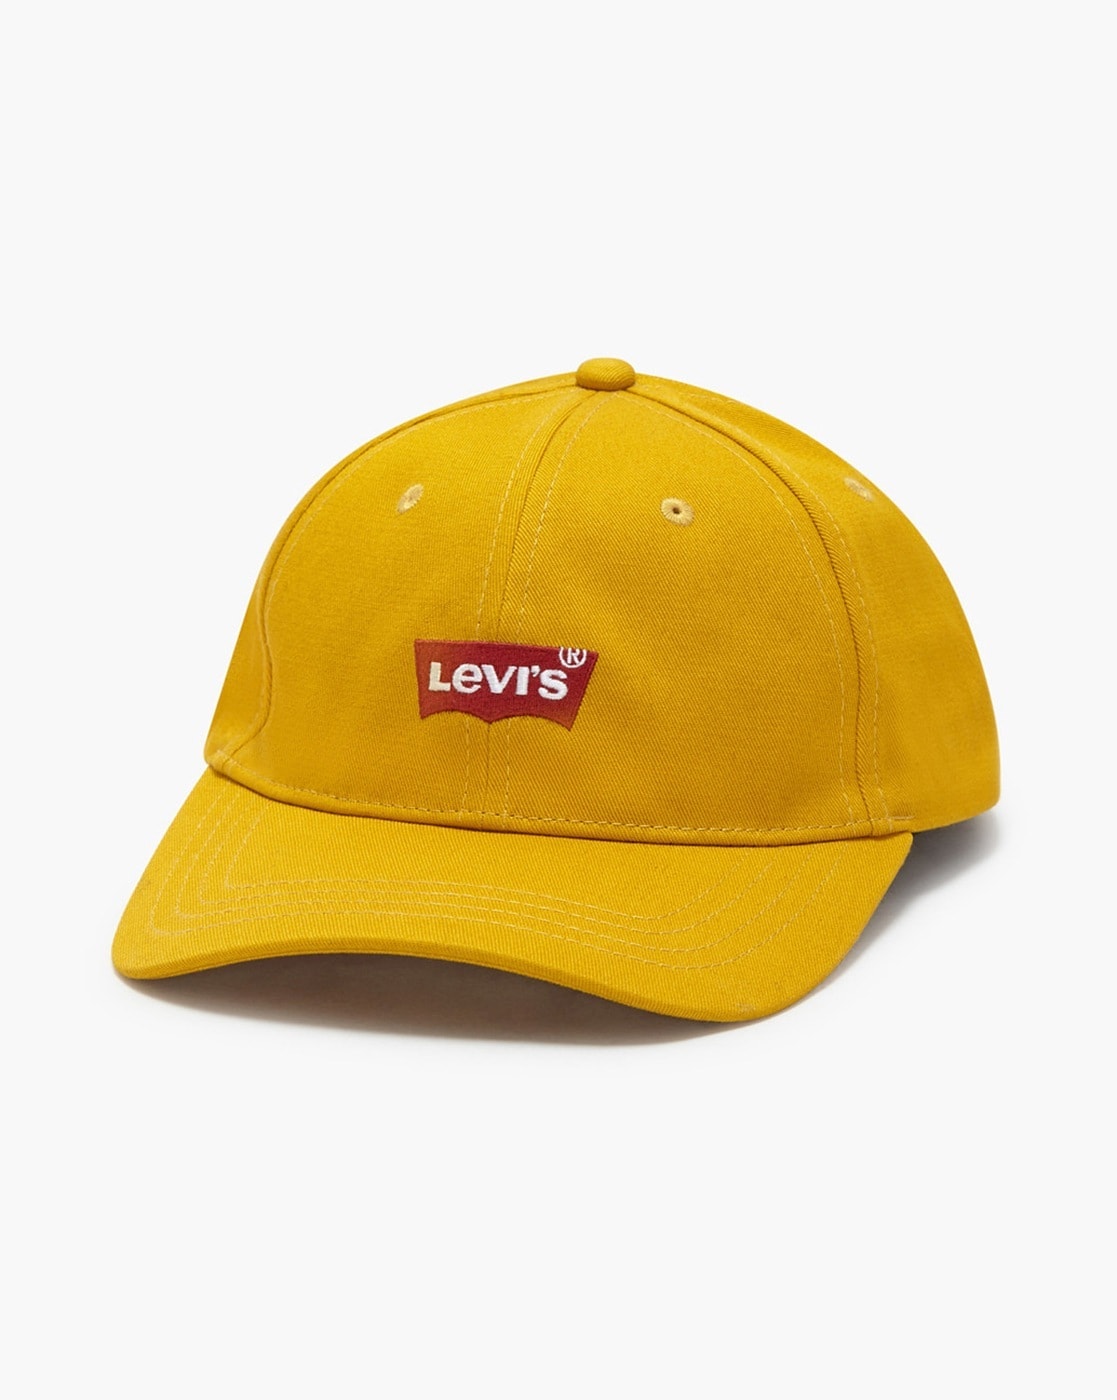 Buy Yellow Caps & Hats for Men by LEVIS Online 